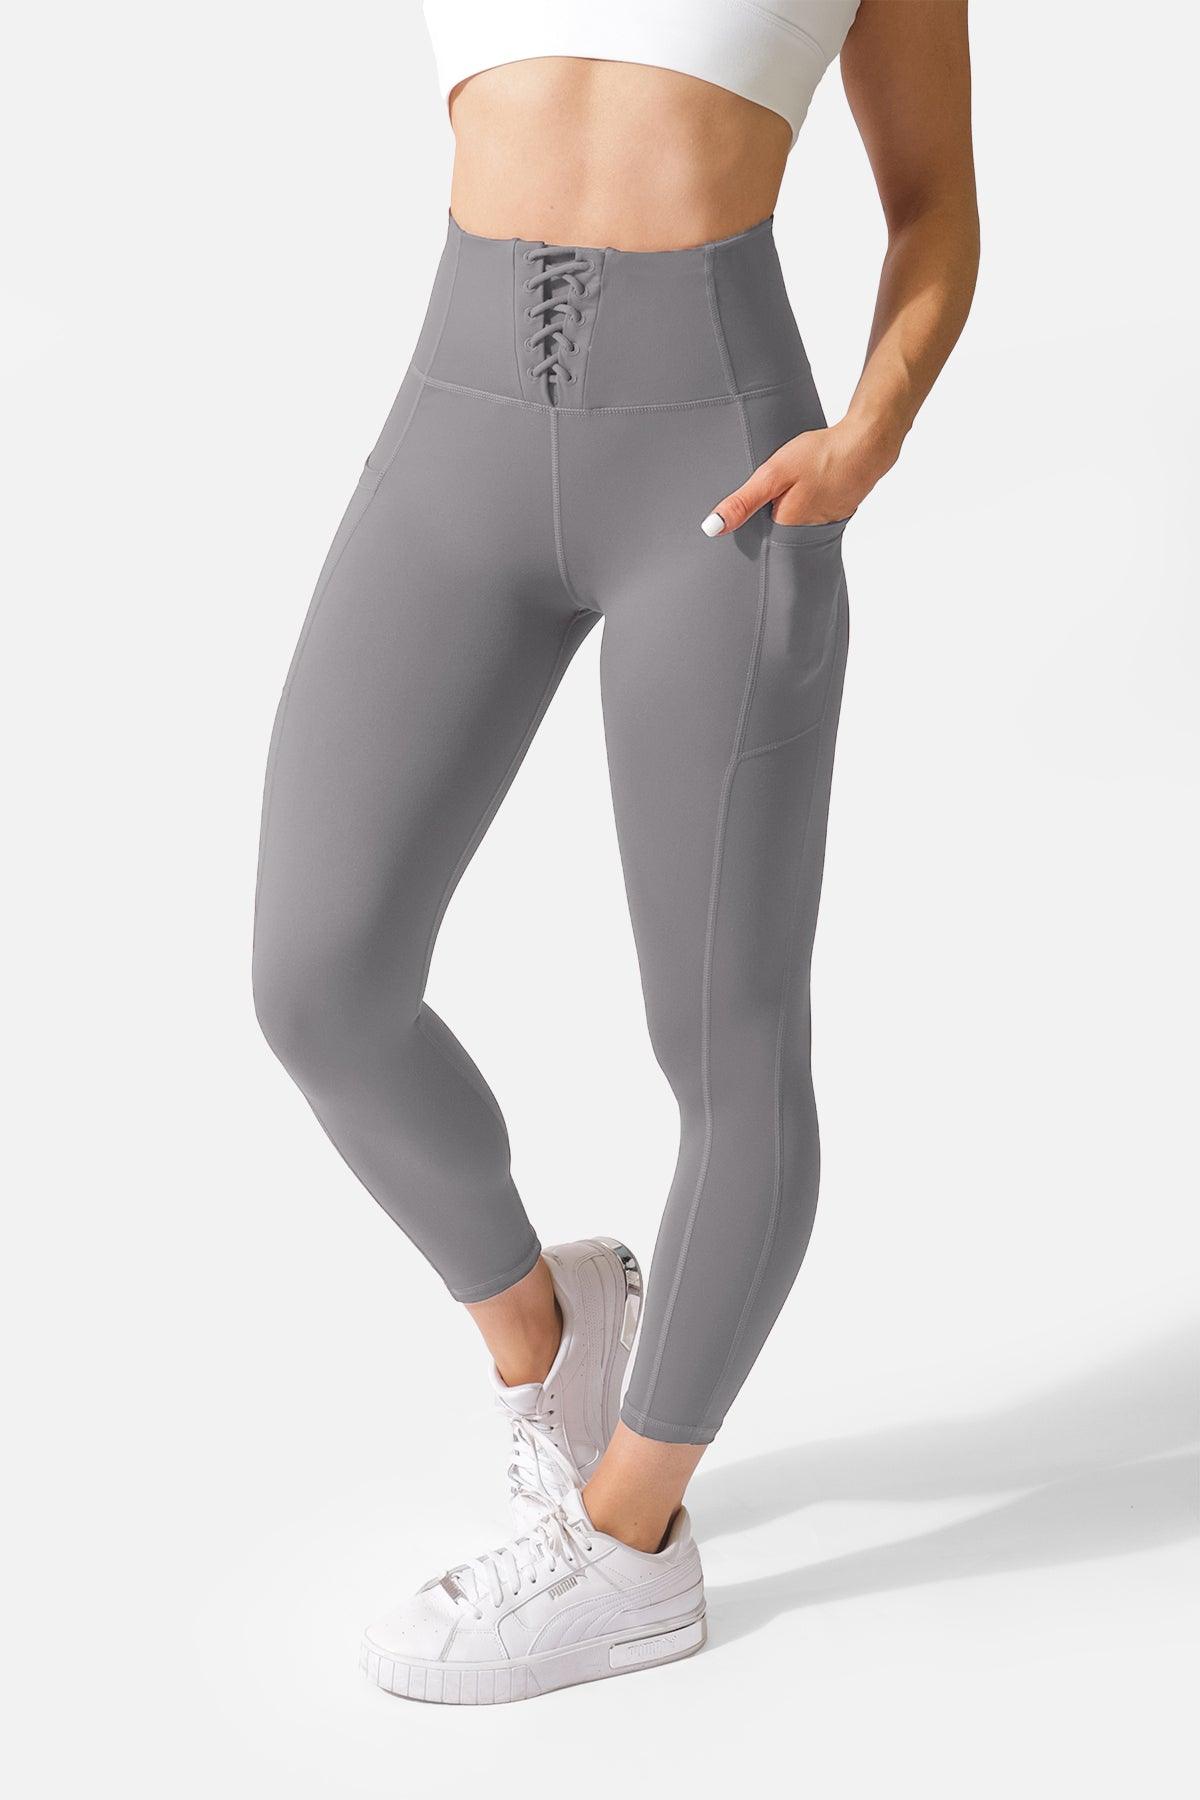 Gymshark Womens Grey Nylon Jogger Leggings Size XS Regular